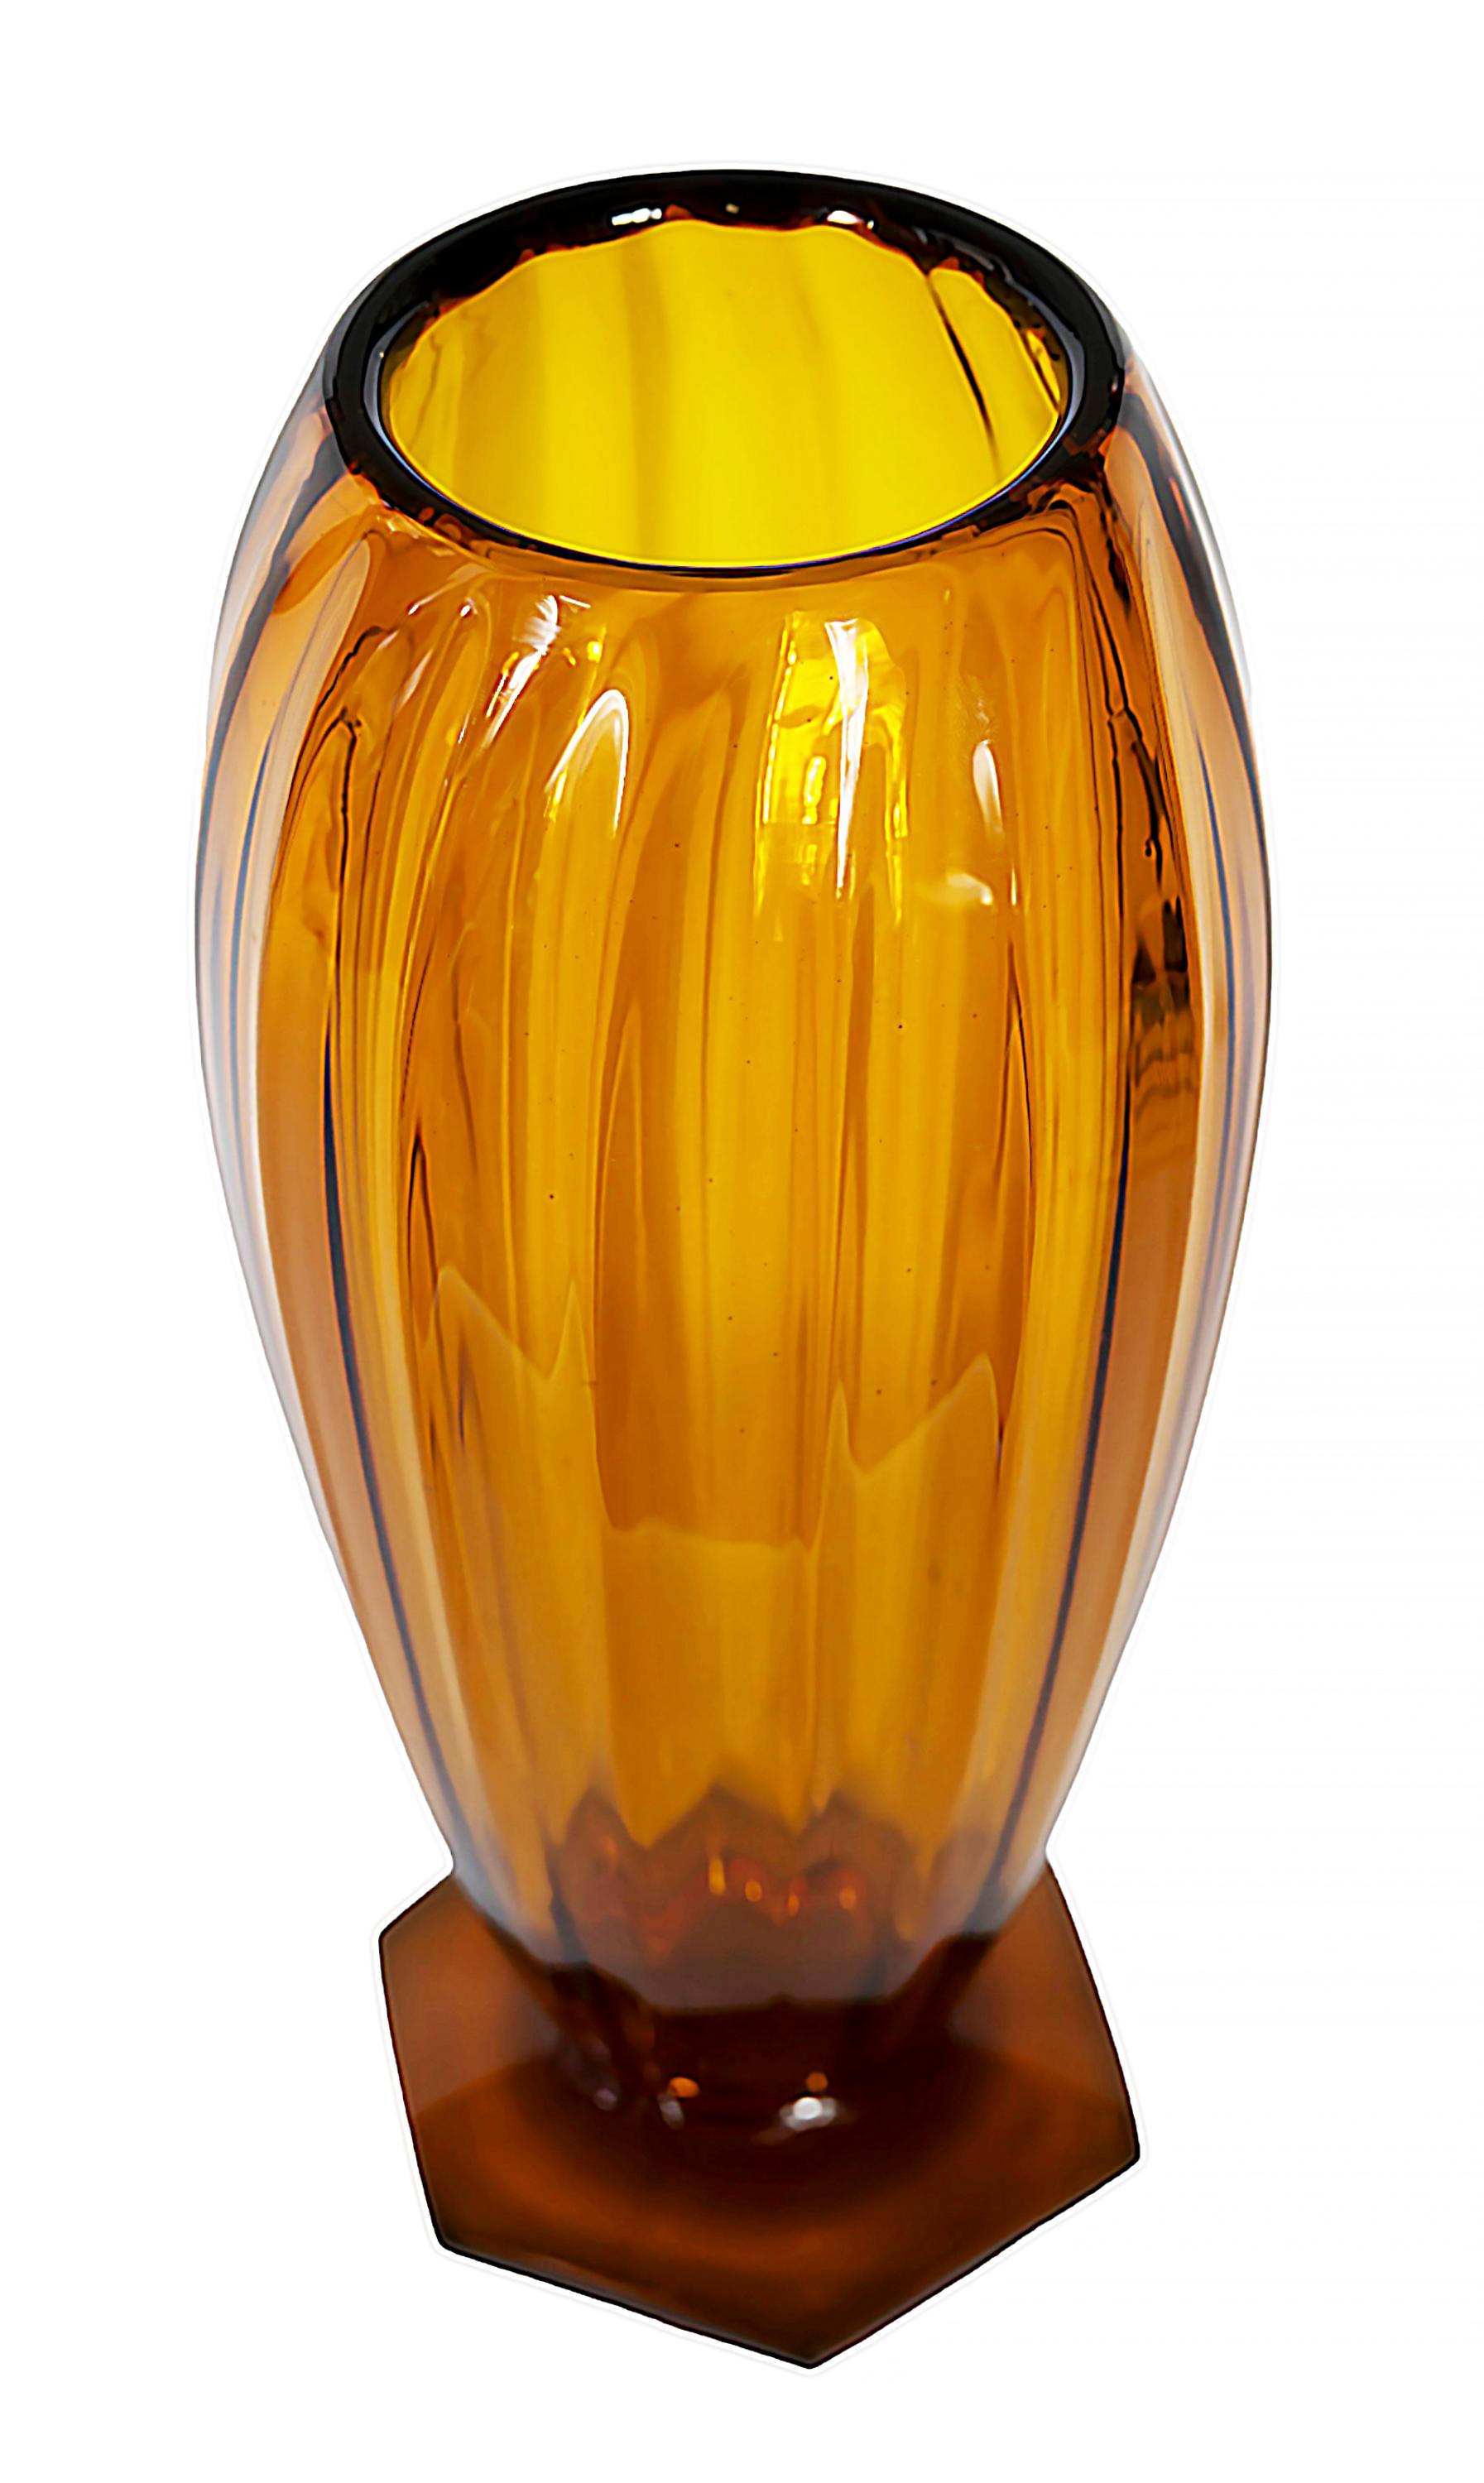 Vase vintage français d'André DELATTE (1887-1953) en verre ambre/orange, sur pied hexagonal.
Signature gravée sur la base.
